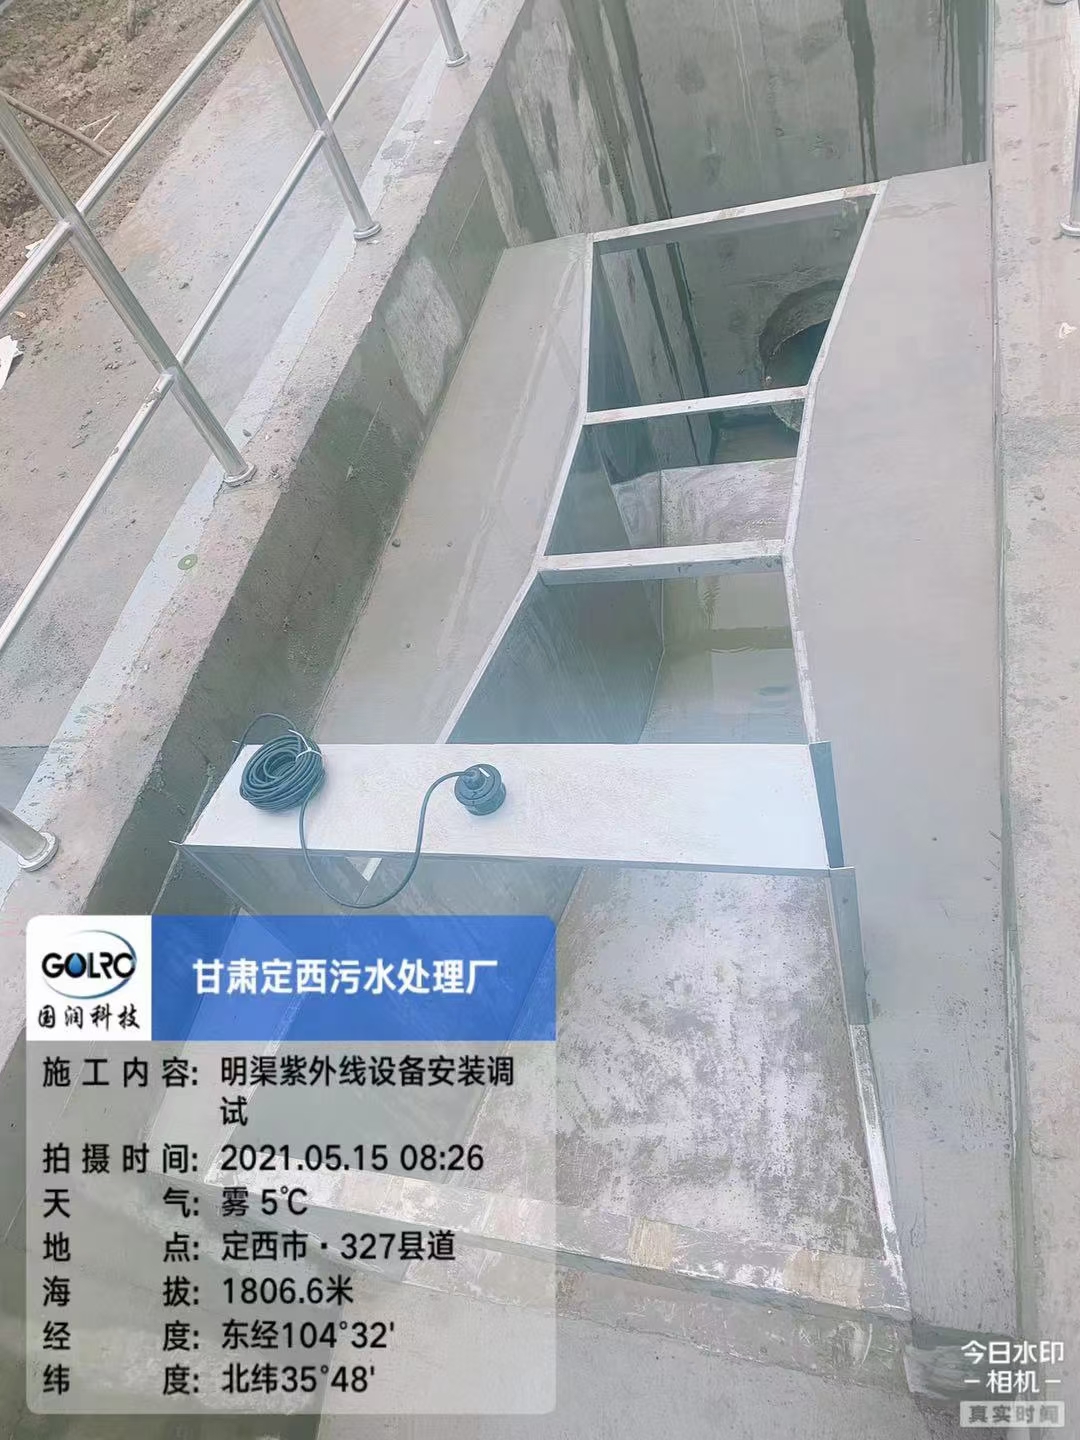 紫外线杀菌设备 上海明渠紫外线安装视频明渠式紫外线消毒器 水处理设备